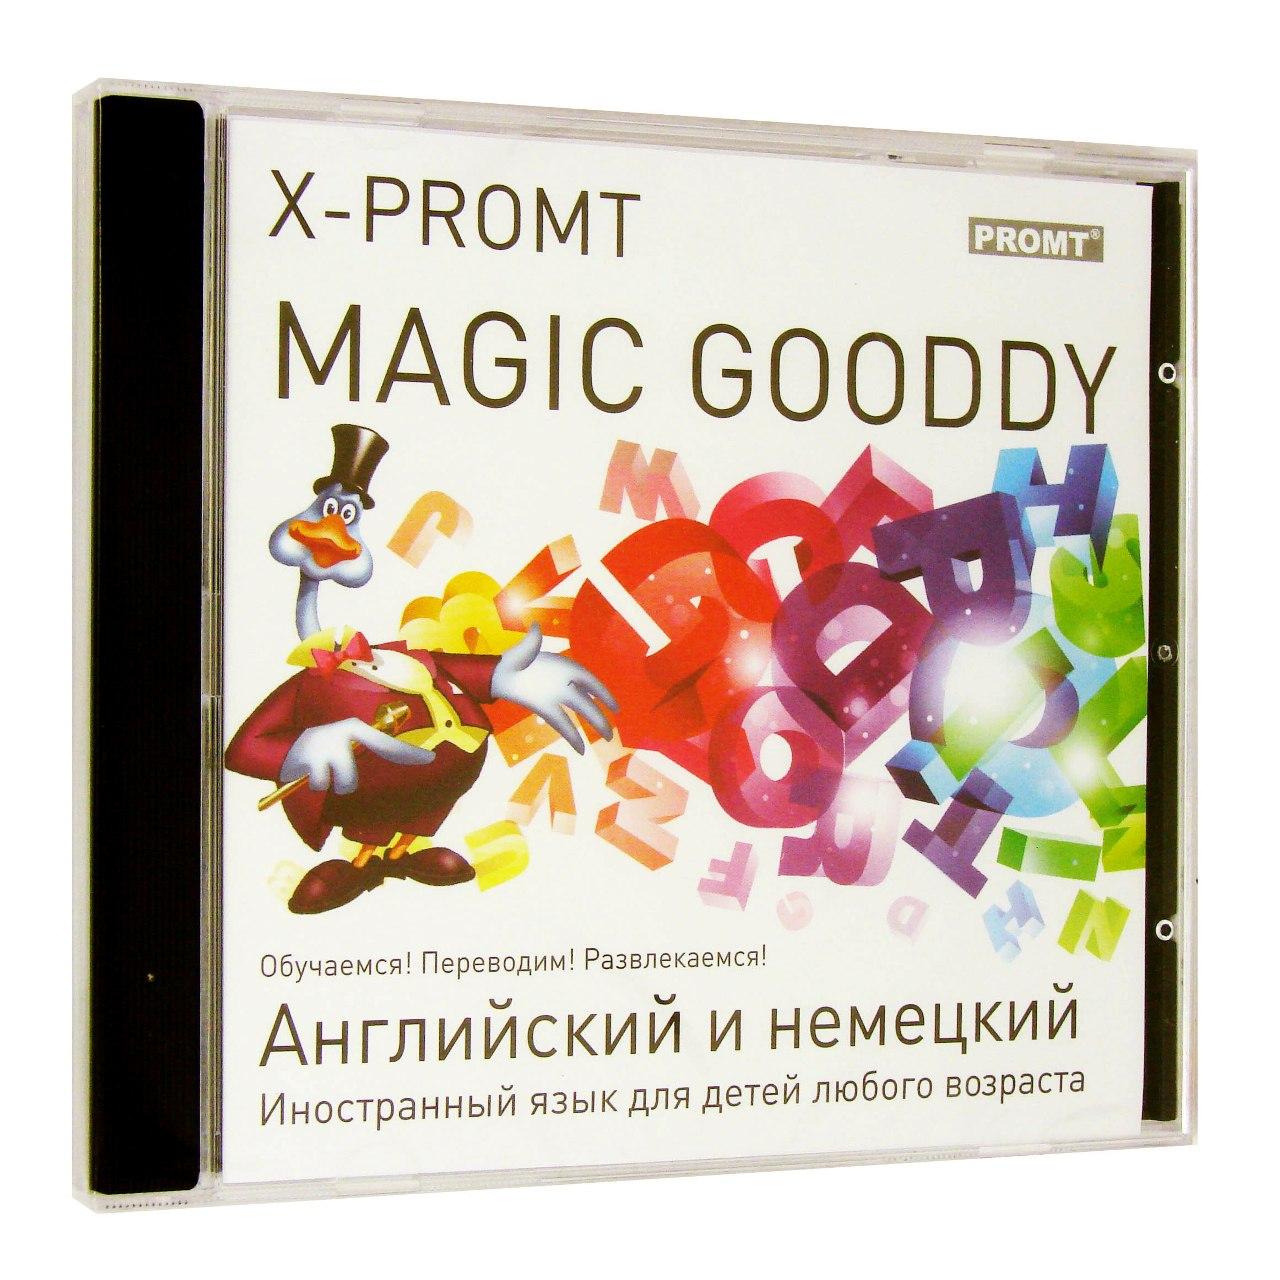 Компьютерный компакт-диск X-Promt Magic Gooddy. Английский и немецкий (ПК), переводчики промт, фирма "Новый диск", 1CD